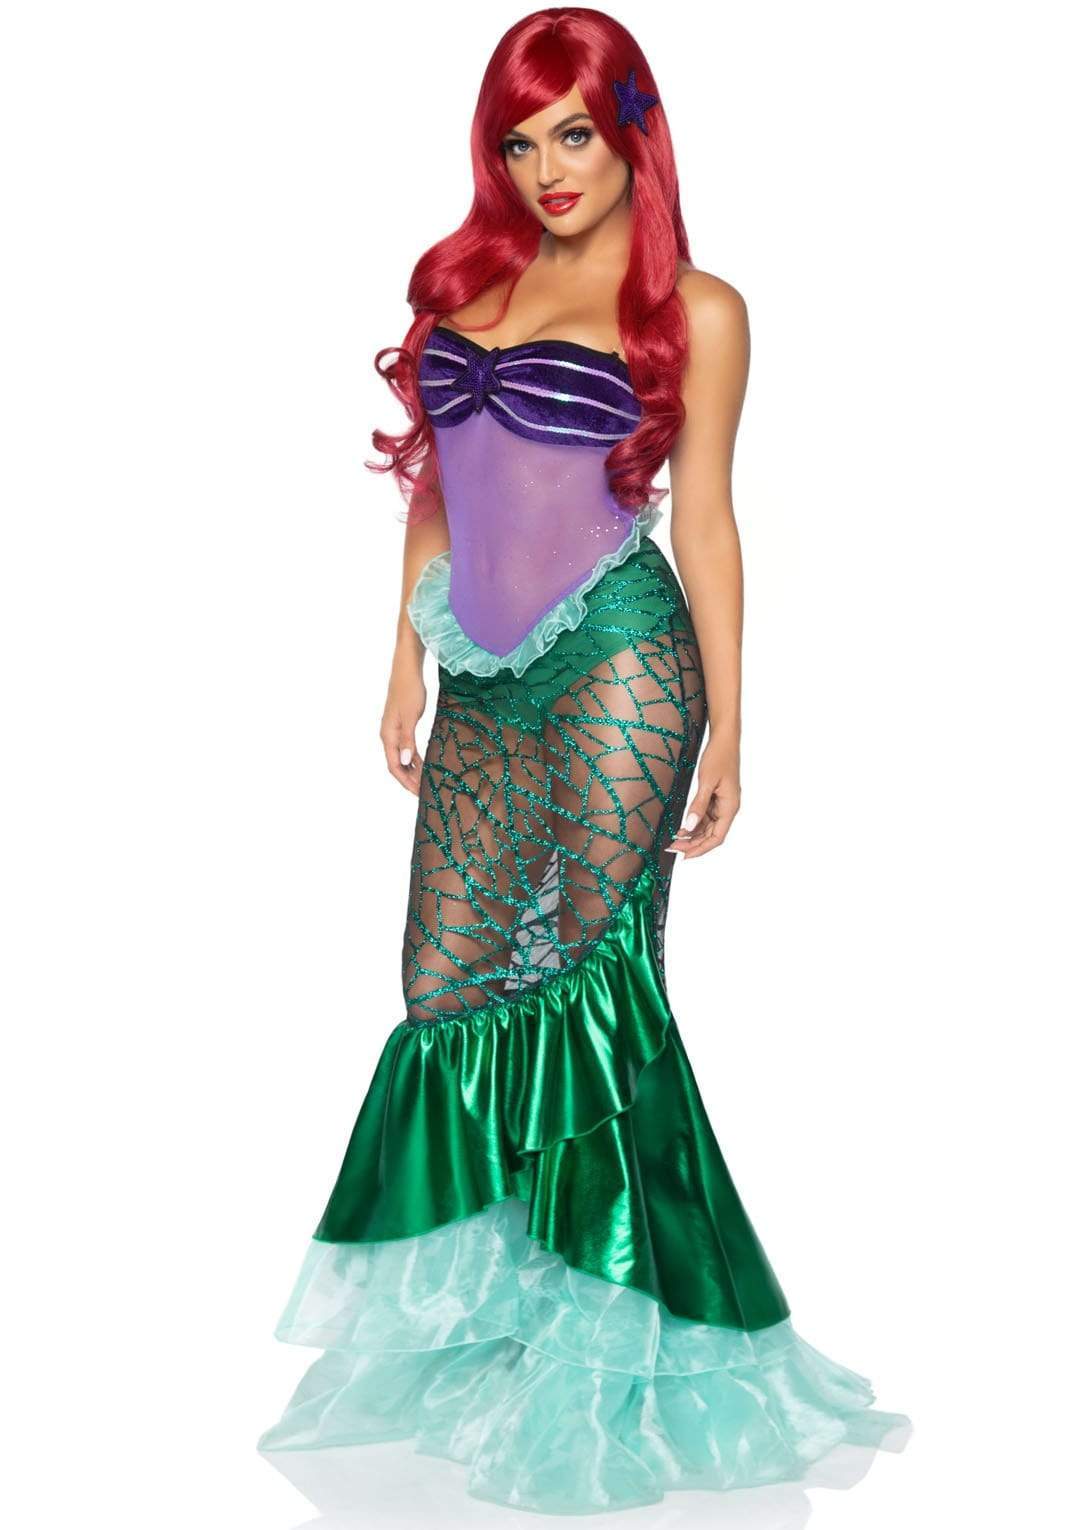 Under the Sea Mermaid Costume